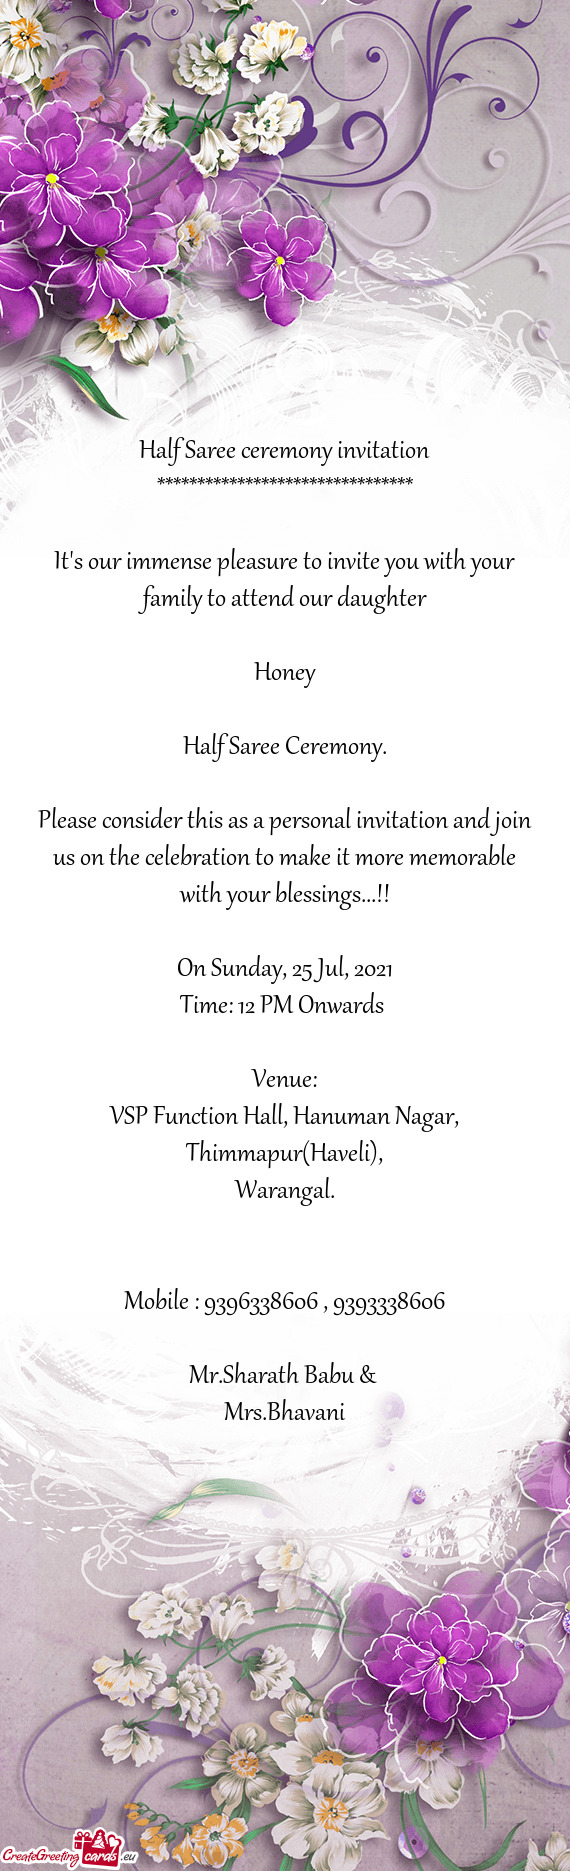 VSP Function Hall, Hanuman Nagar, Thimmapur(Haveli)